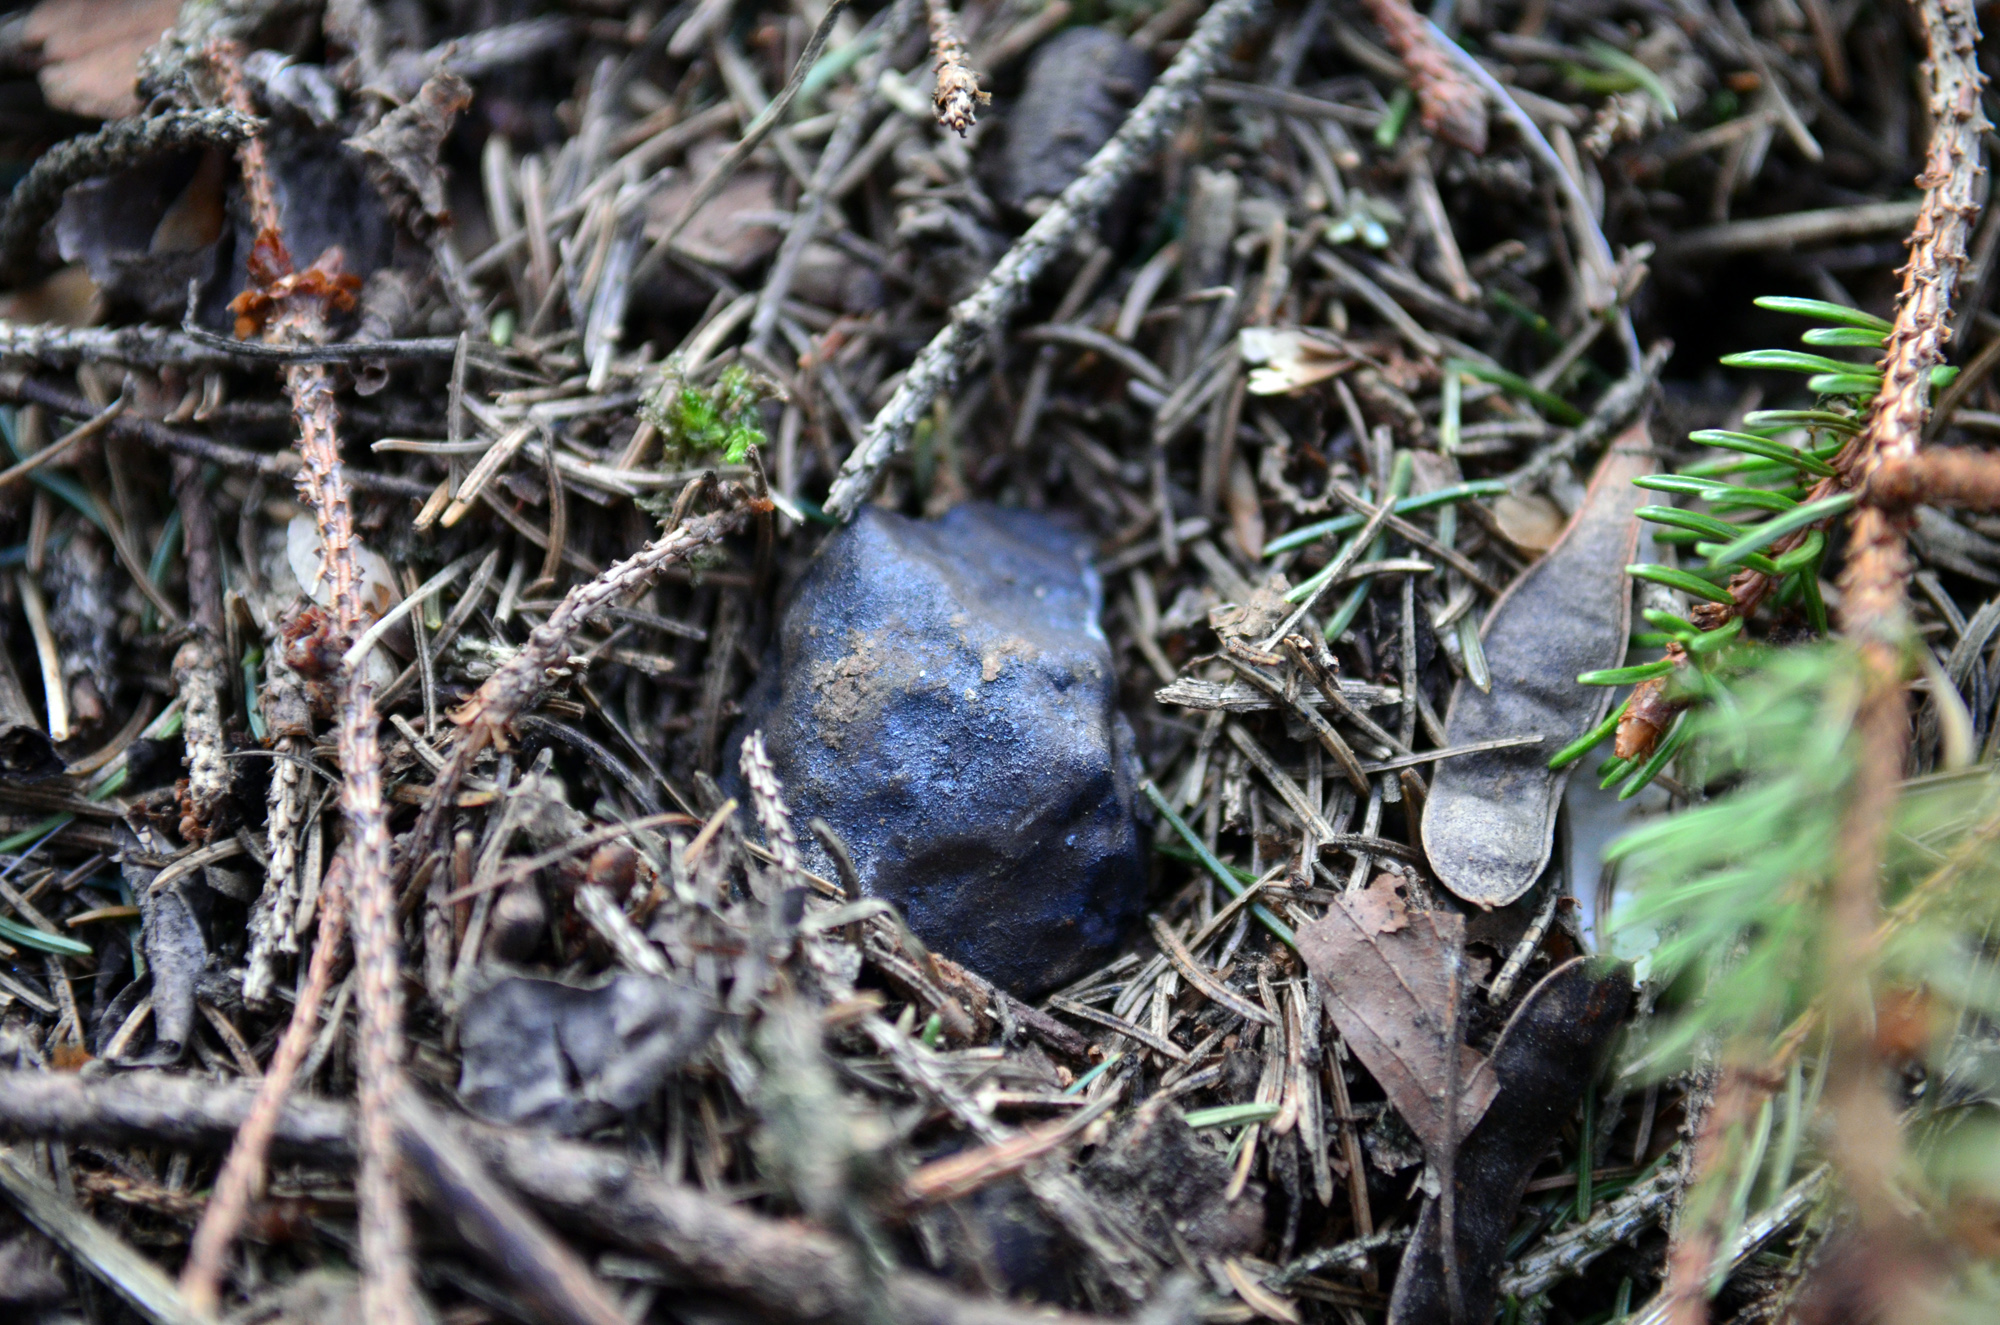 Fifth 'Ering' meteorite in situ on 3 April 2016 (Photo: Dennis H.)